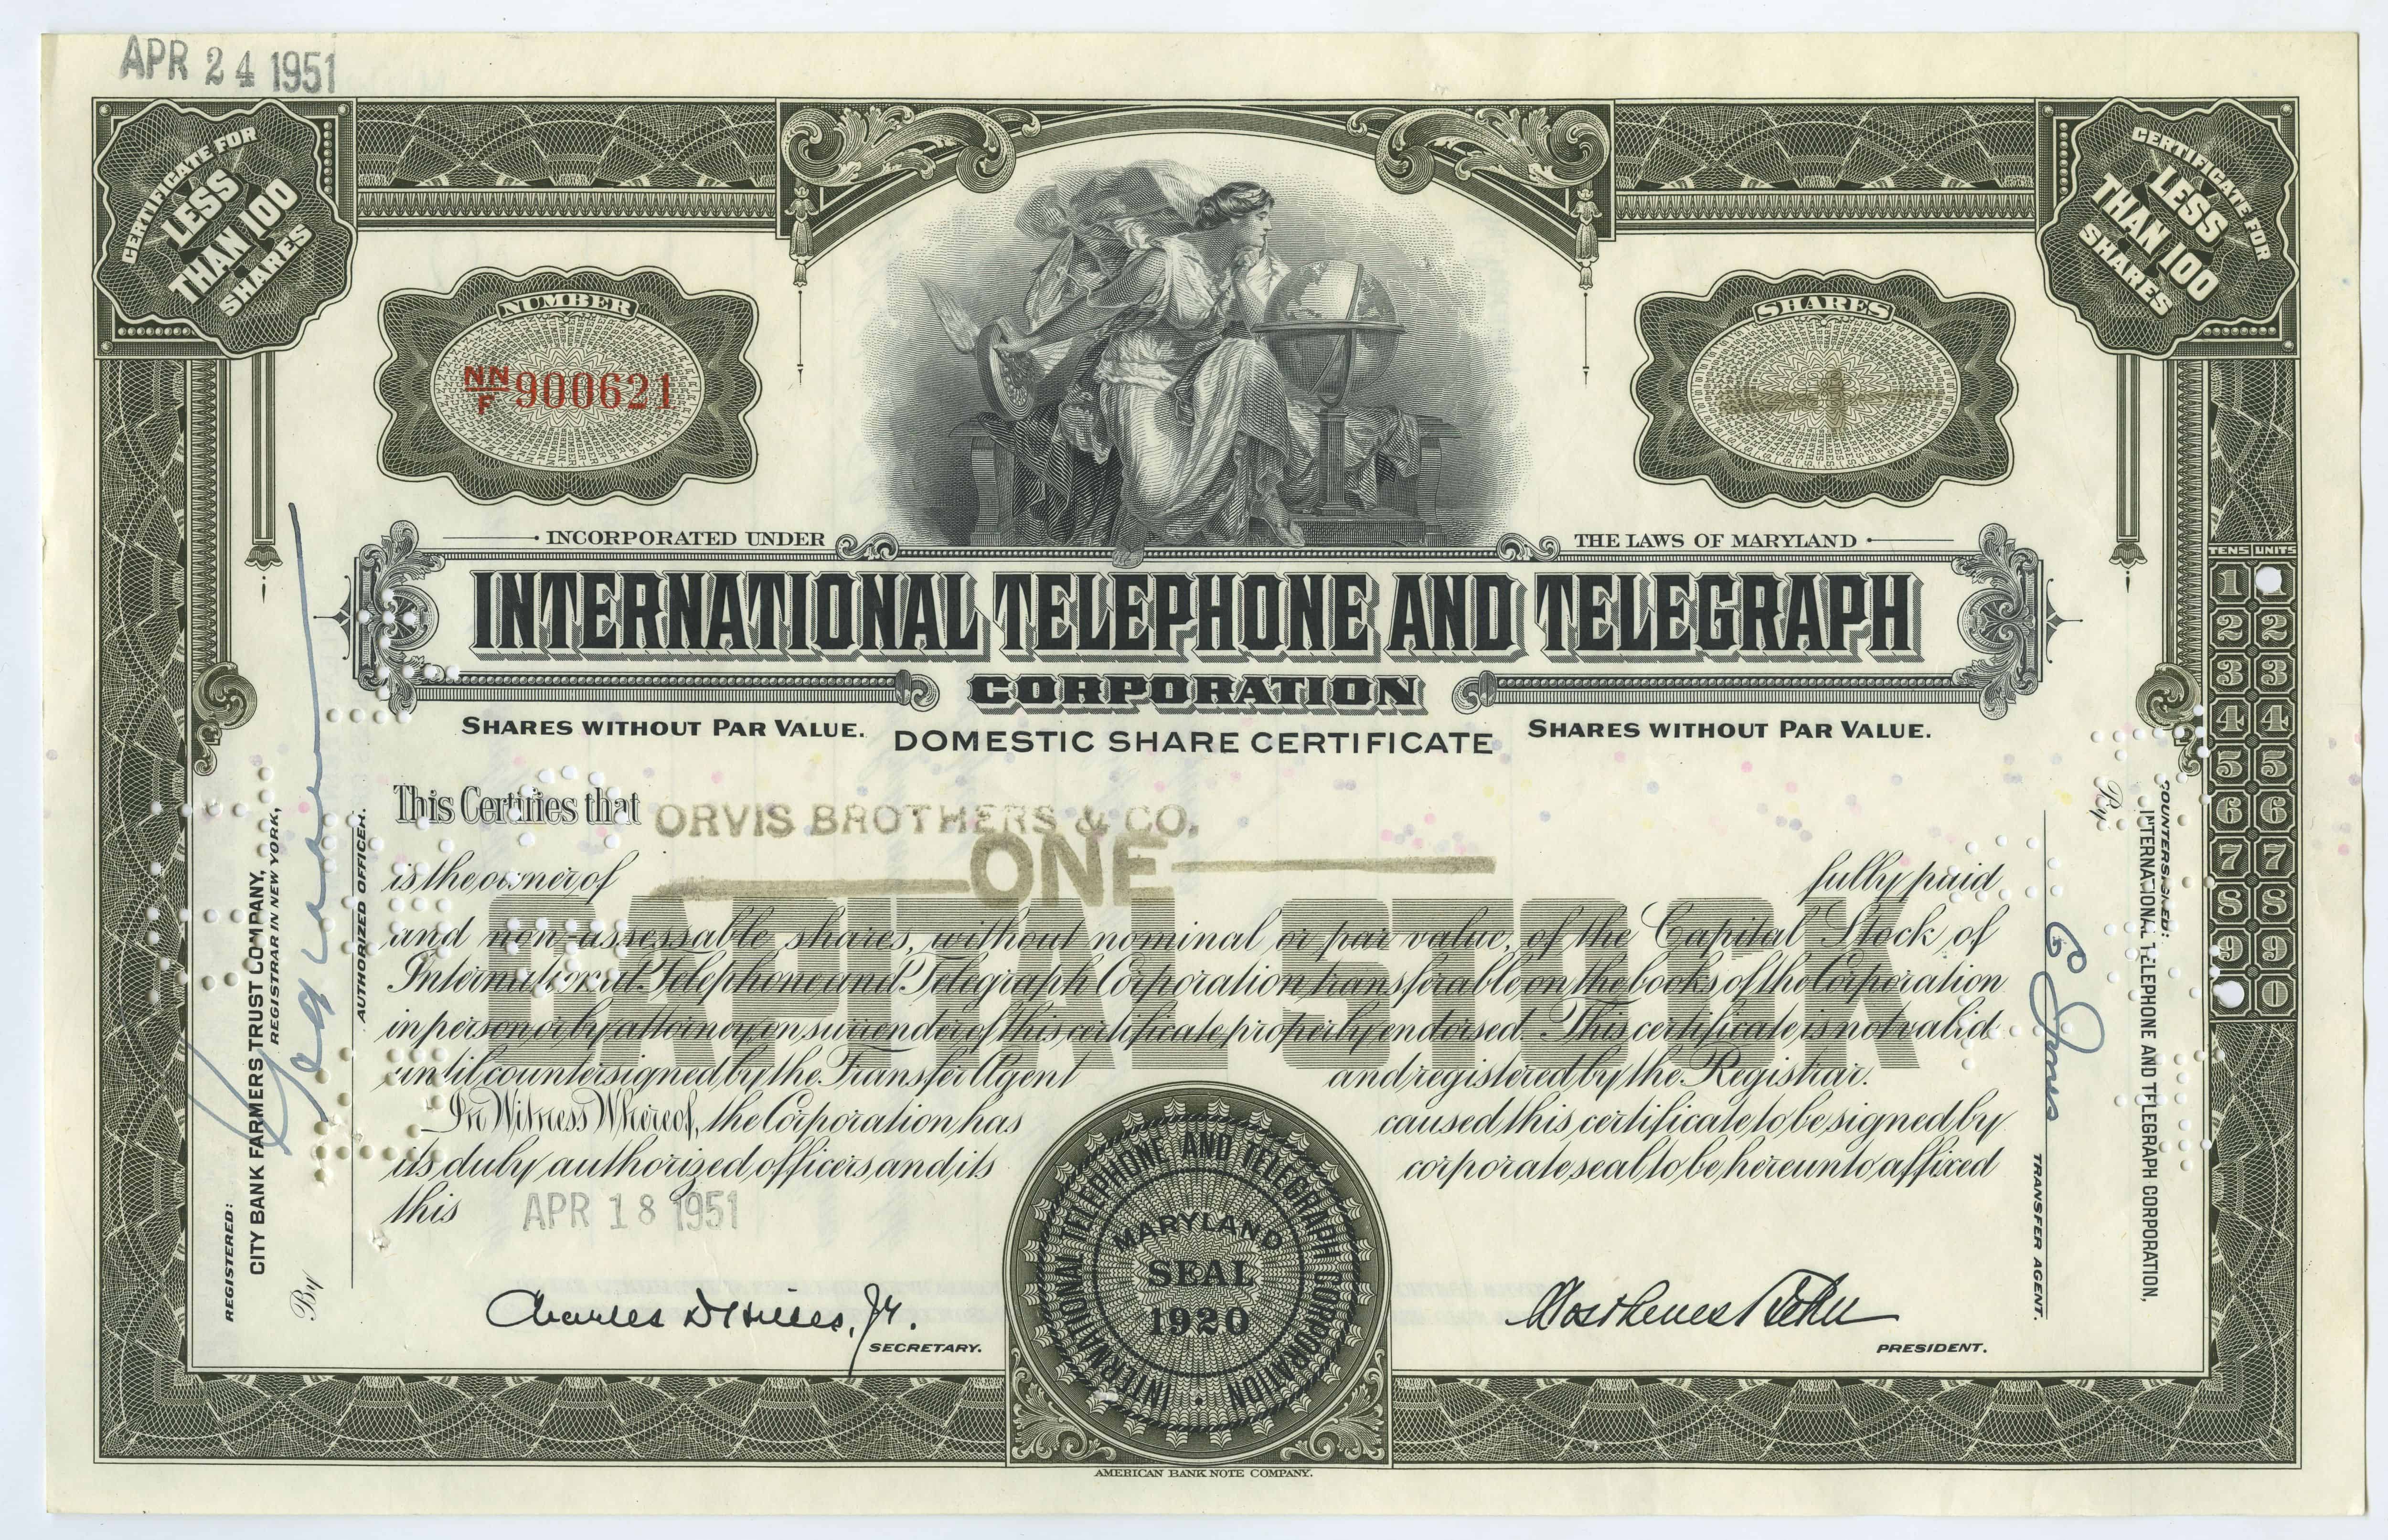 1 akcja spółki International Telephone and Telegraph Corporation z dnia 18 kwietnia 1951 roku